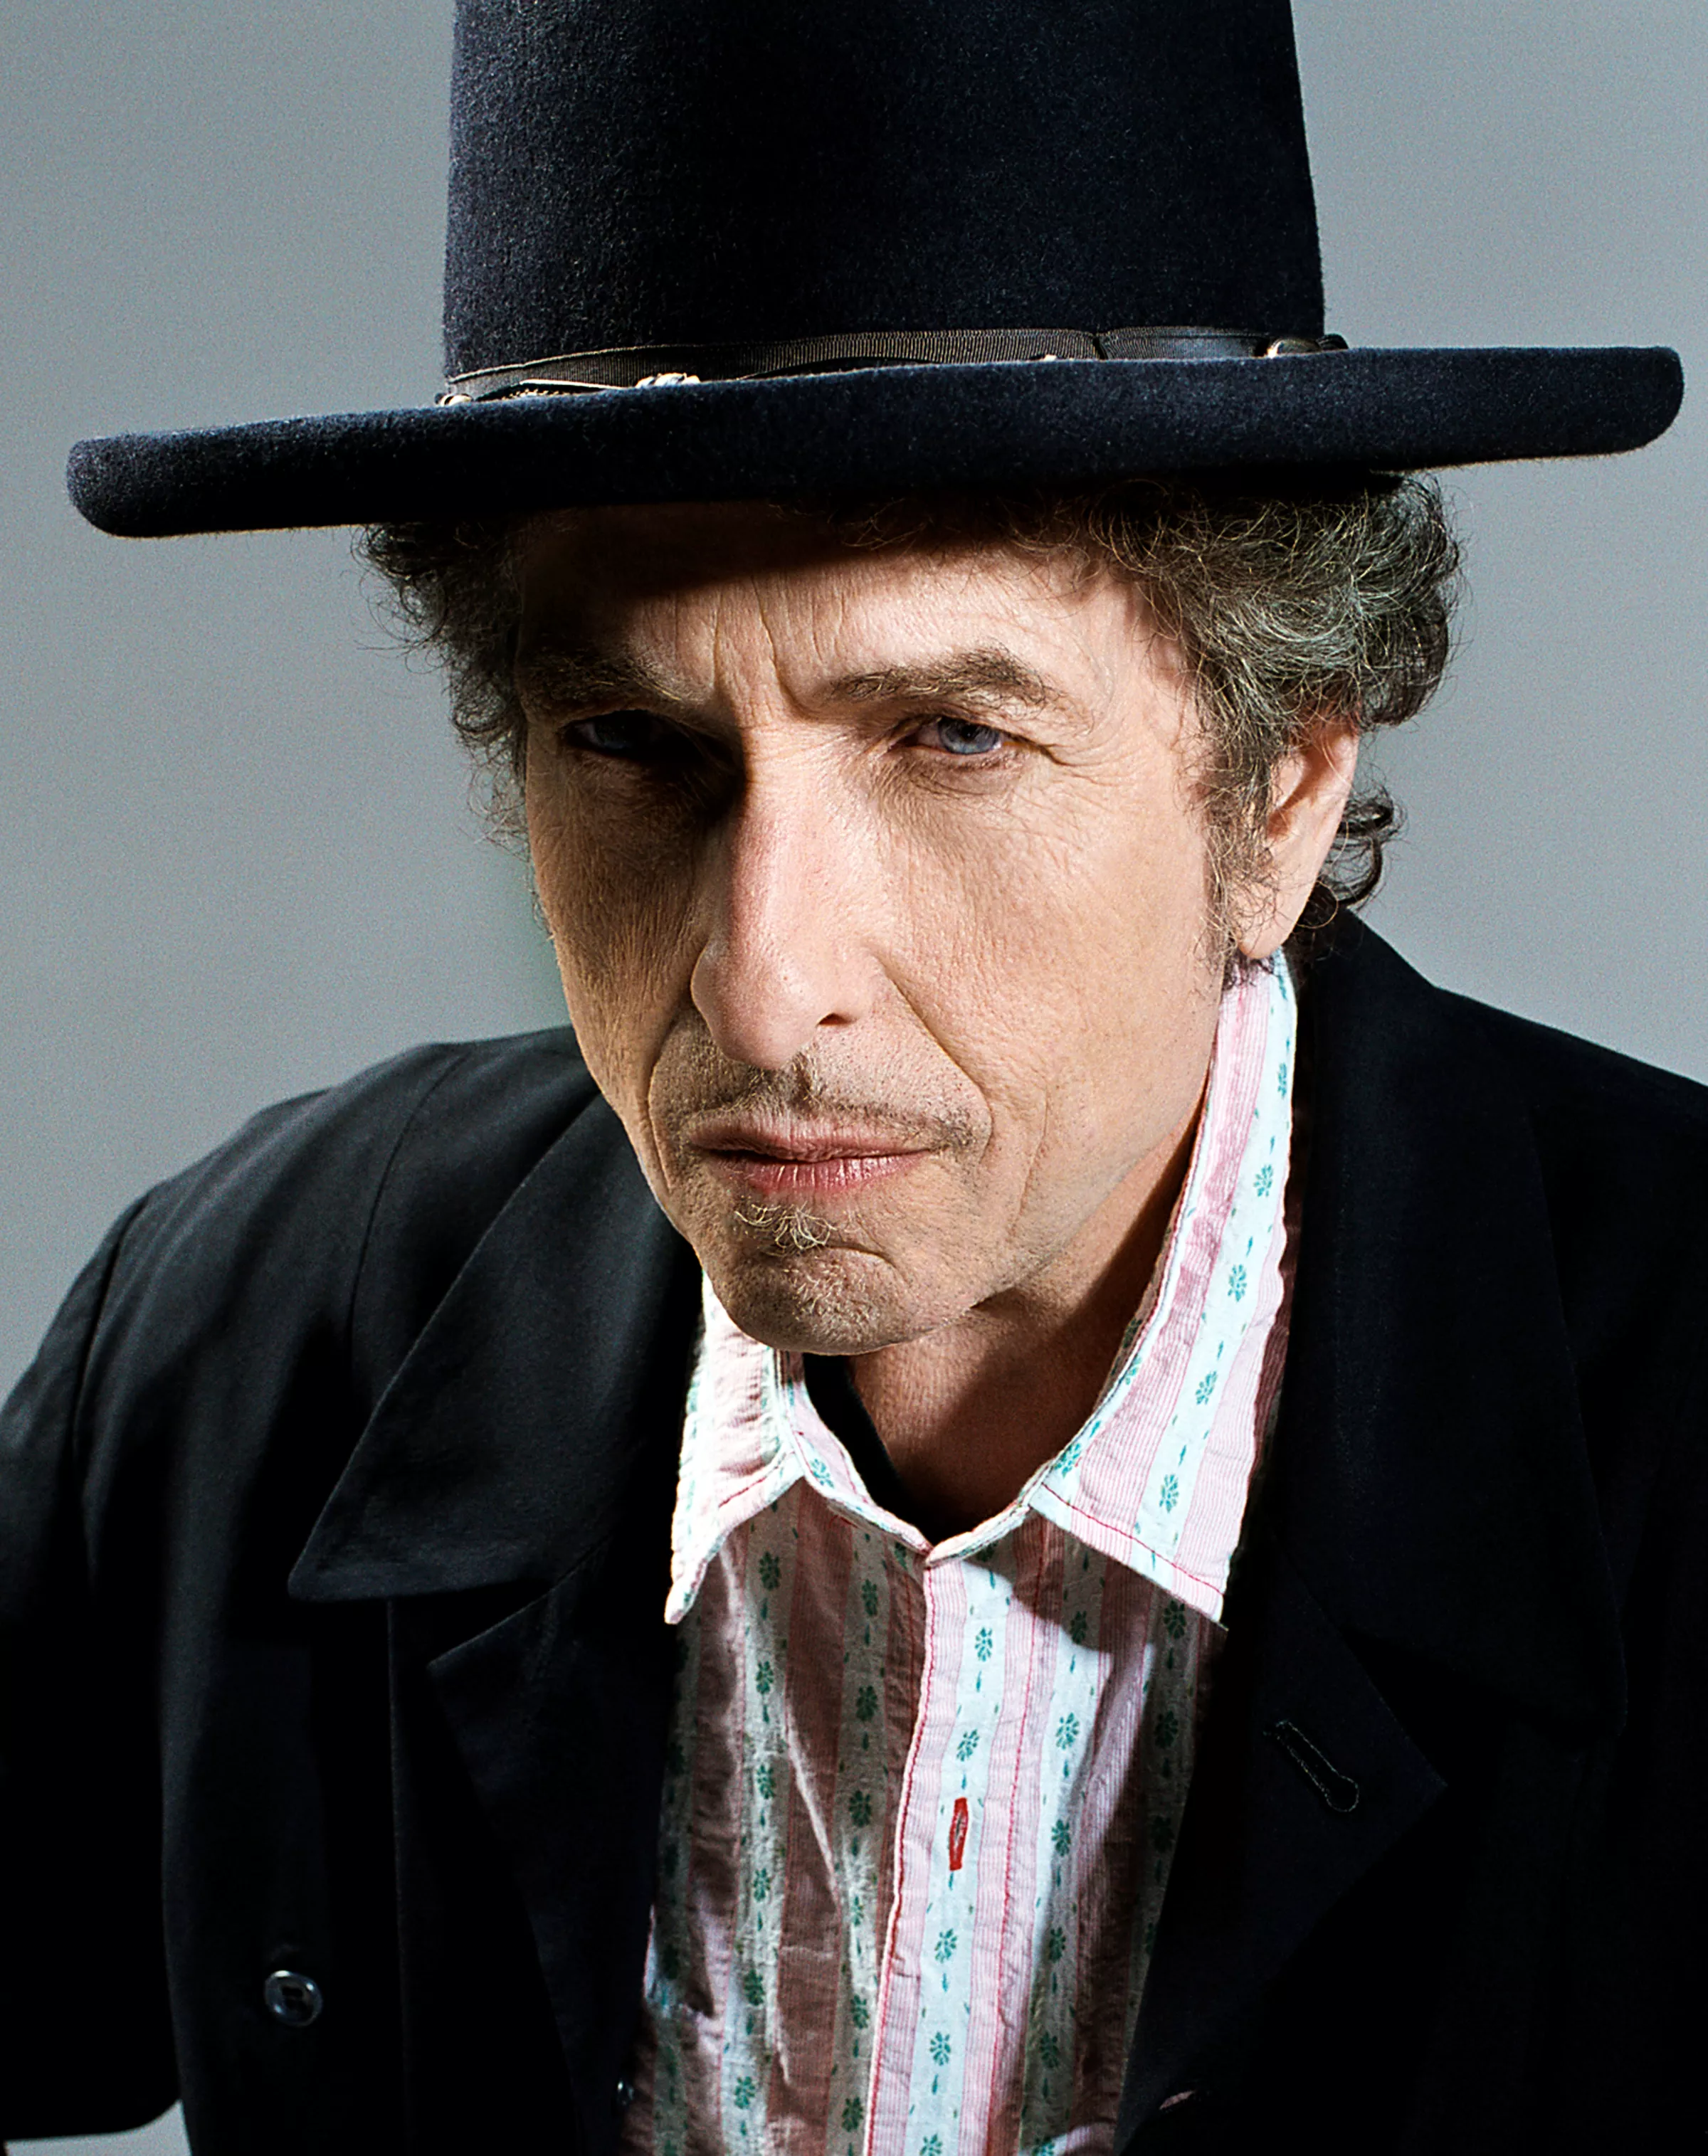 Forum, København - Bob Dylan